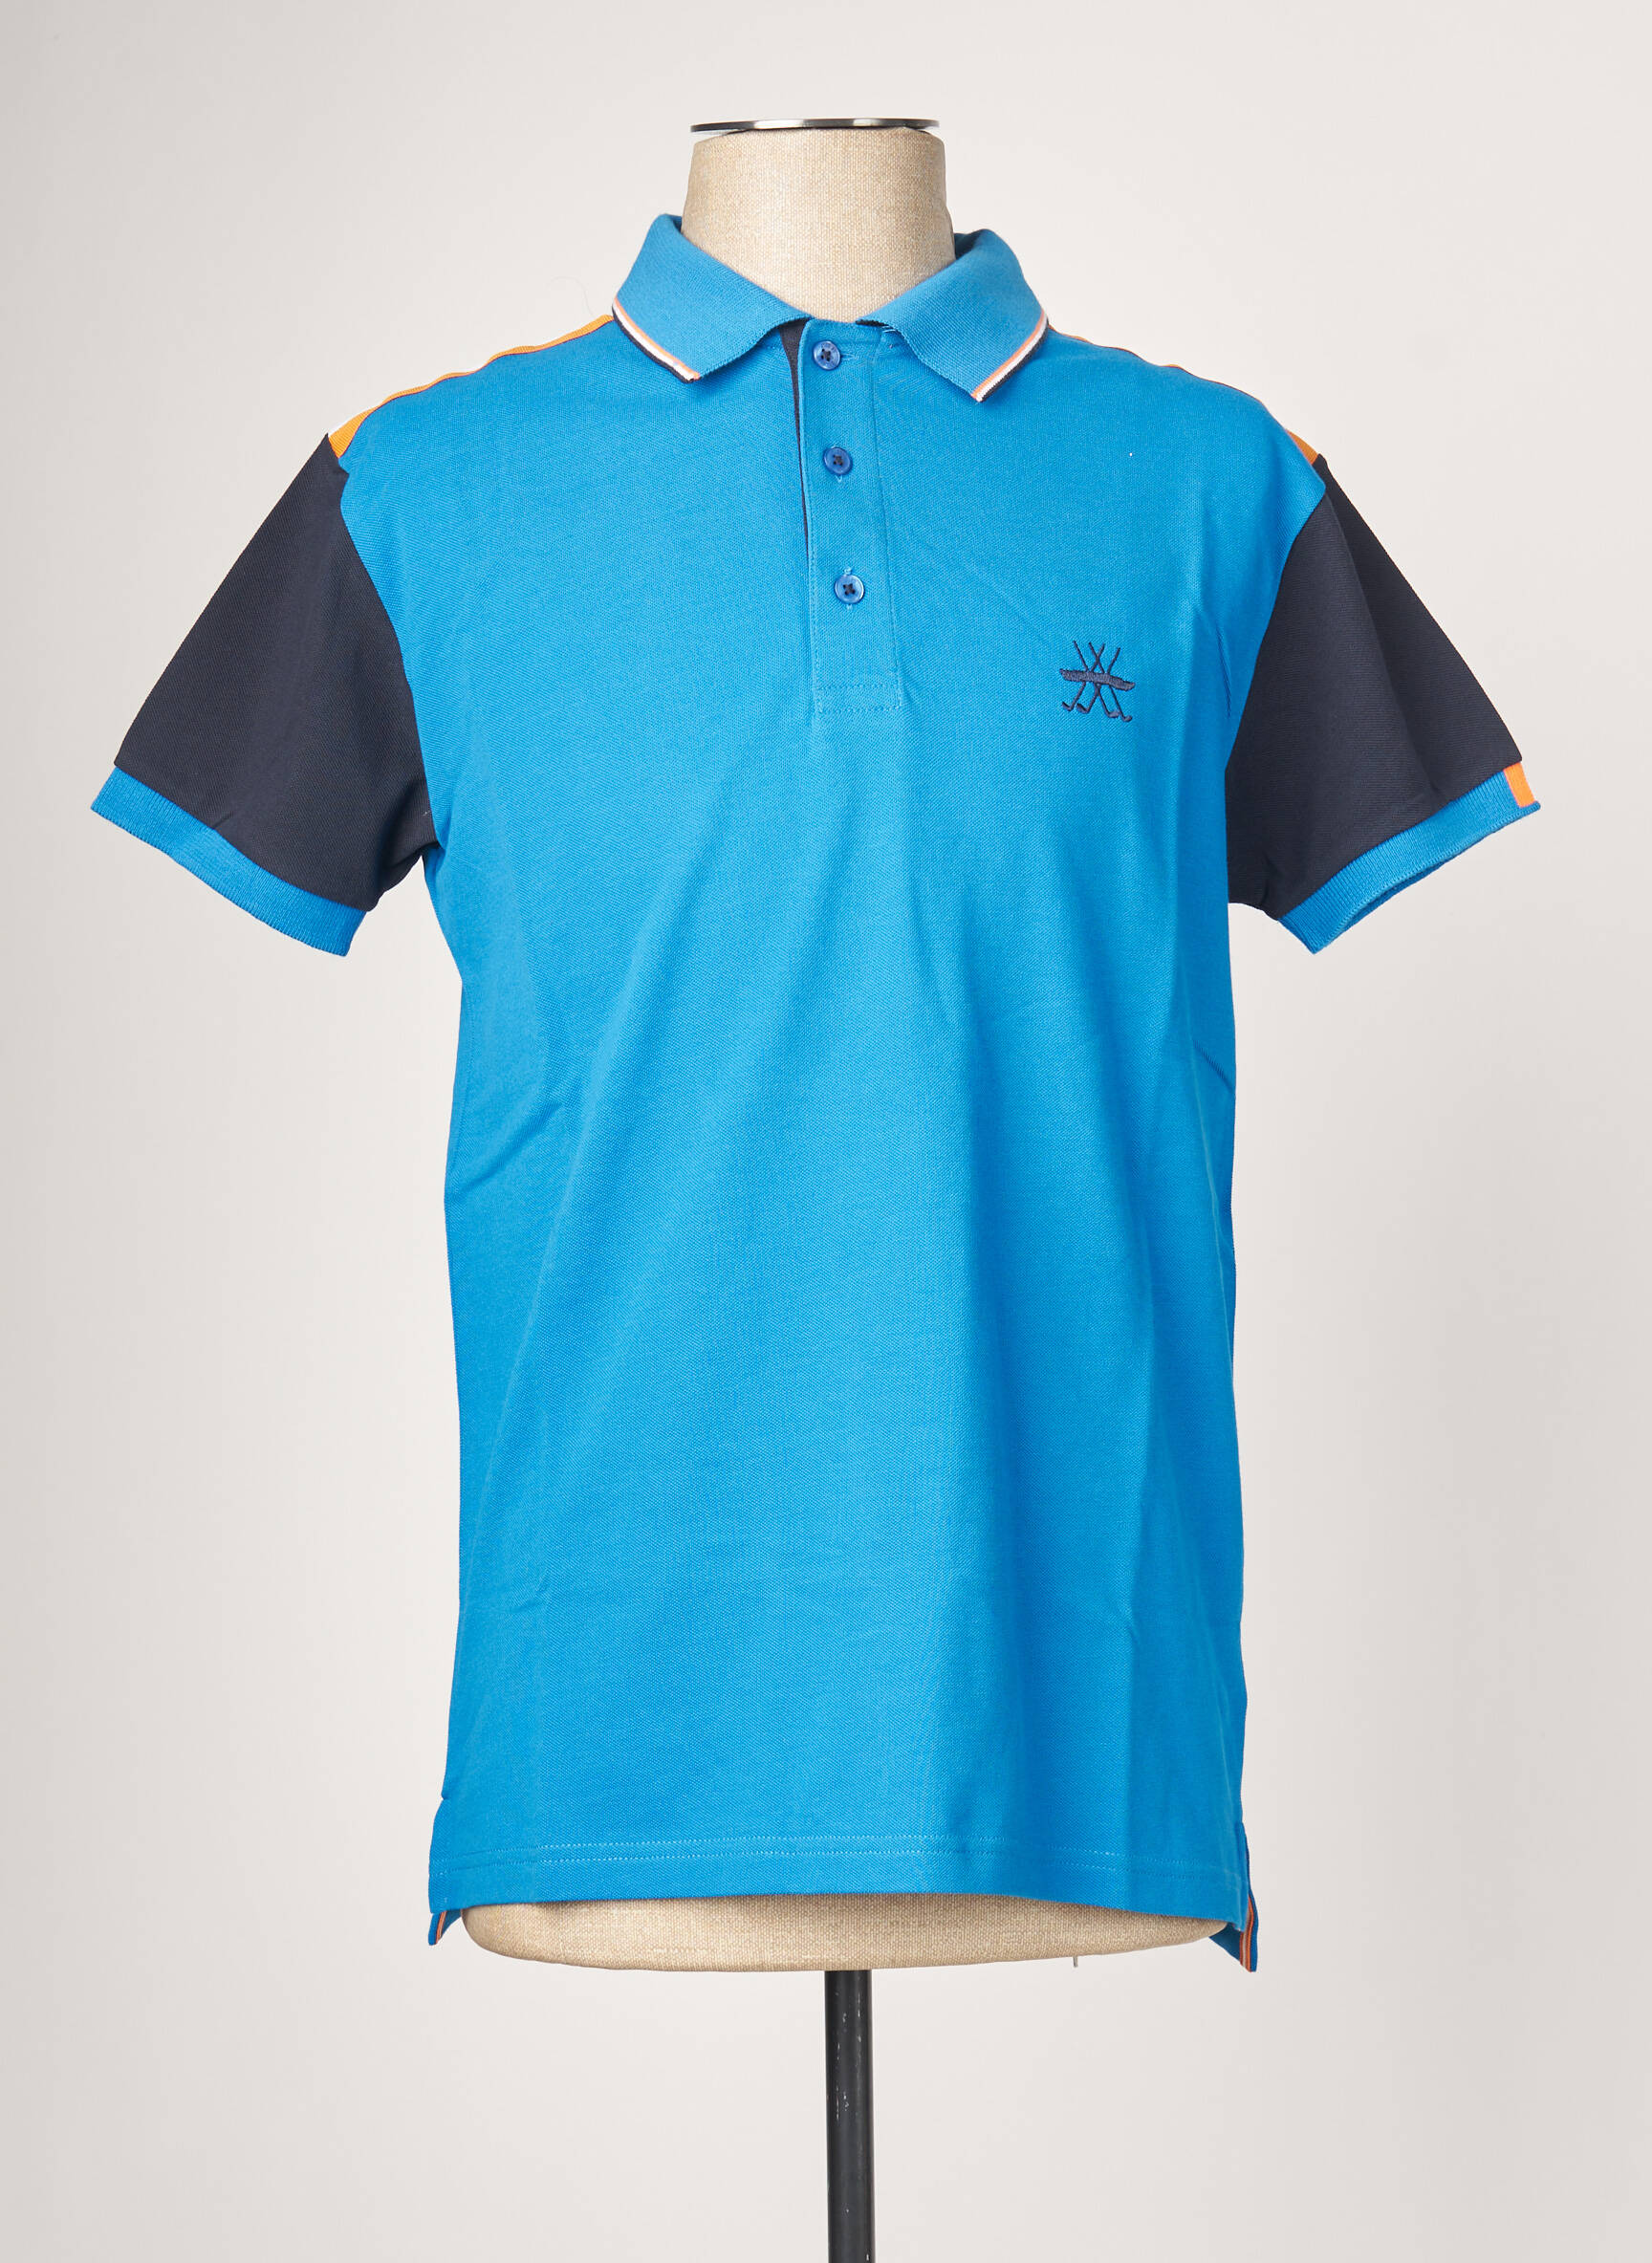 Charles Le Golf Polos Homme De Couleur Bleu 2075030-bleu00 - Modz